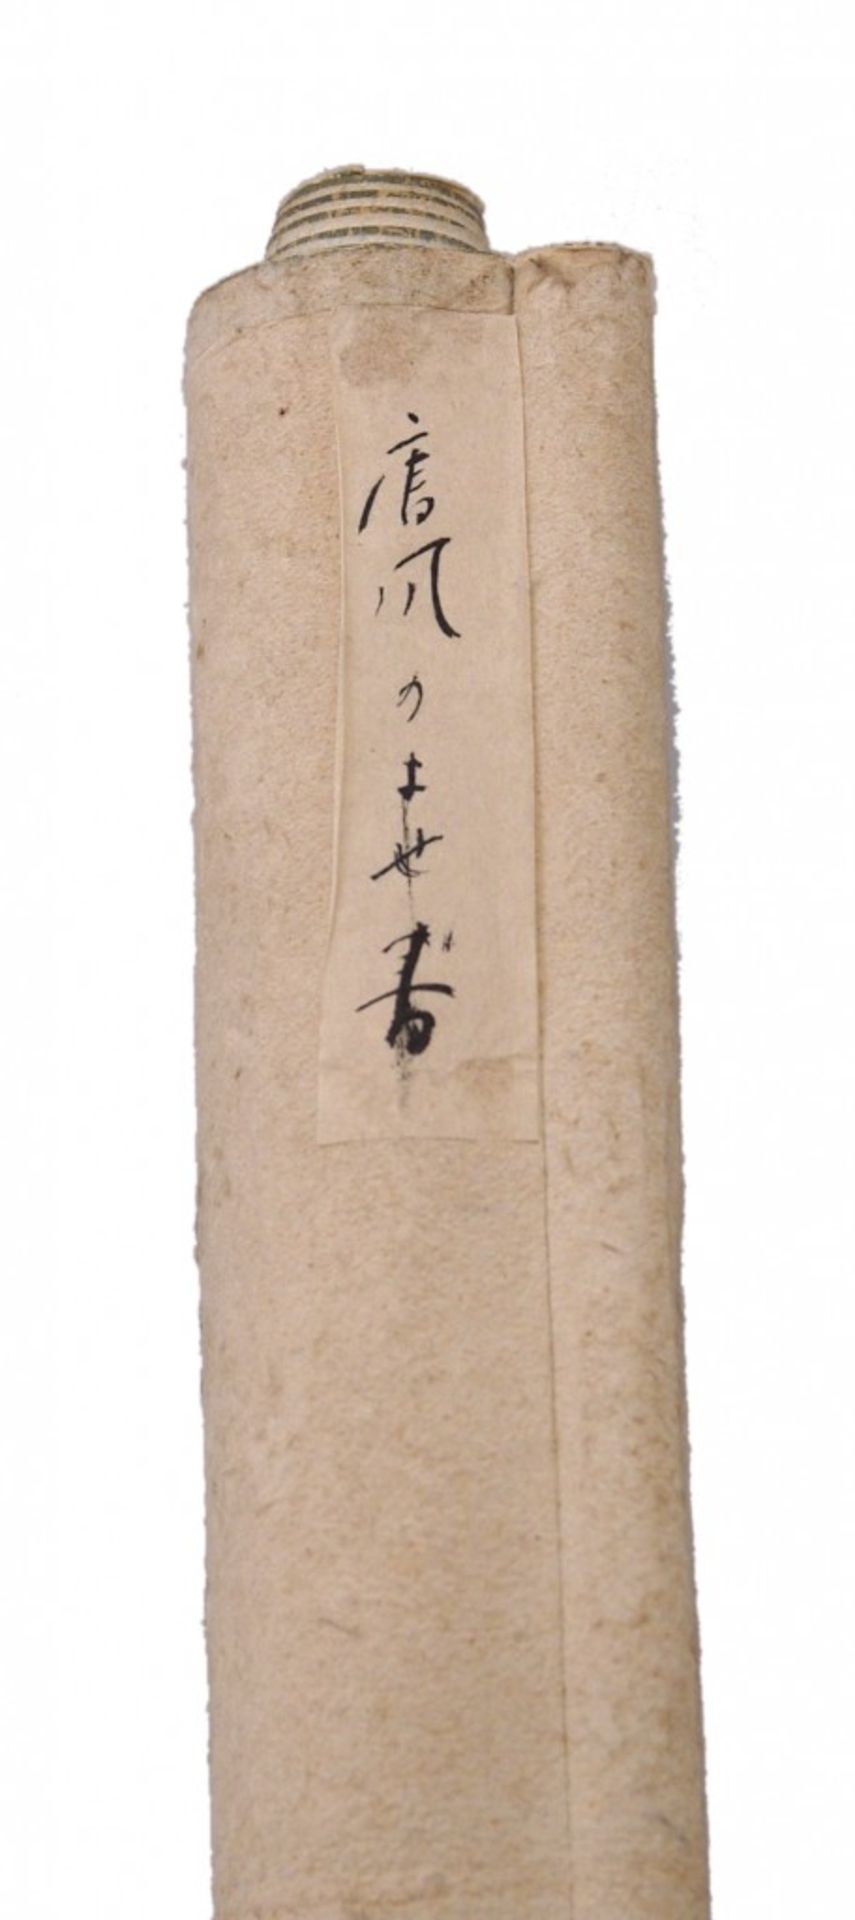 Japanese hanging scroll kakejiku in the shape of a fan - Bild 3 aus 3